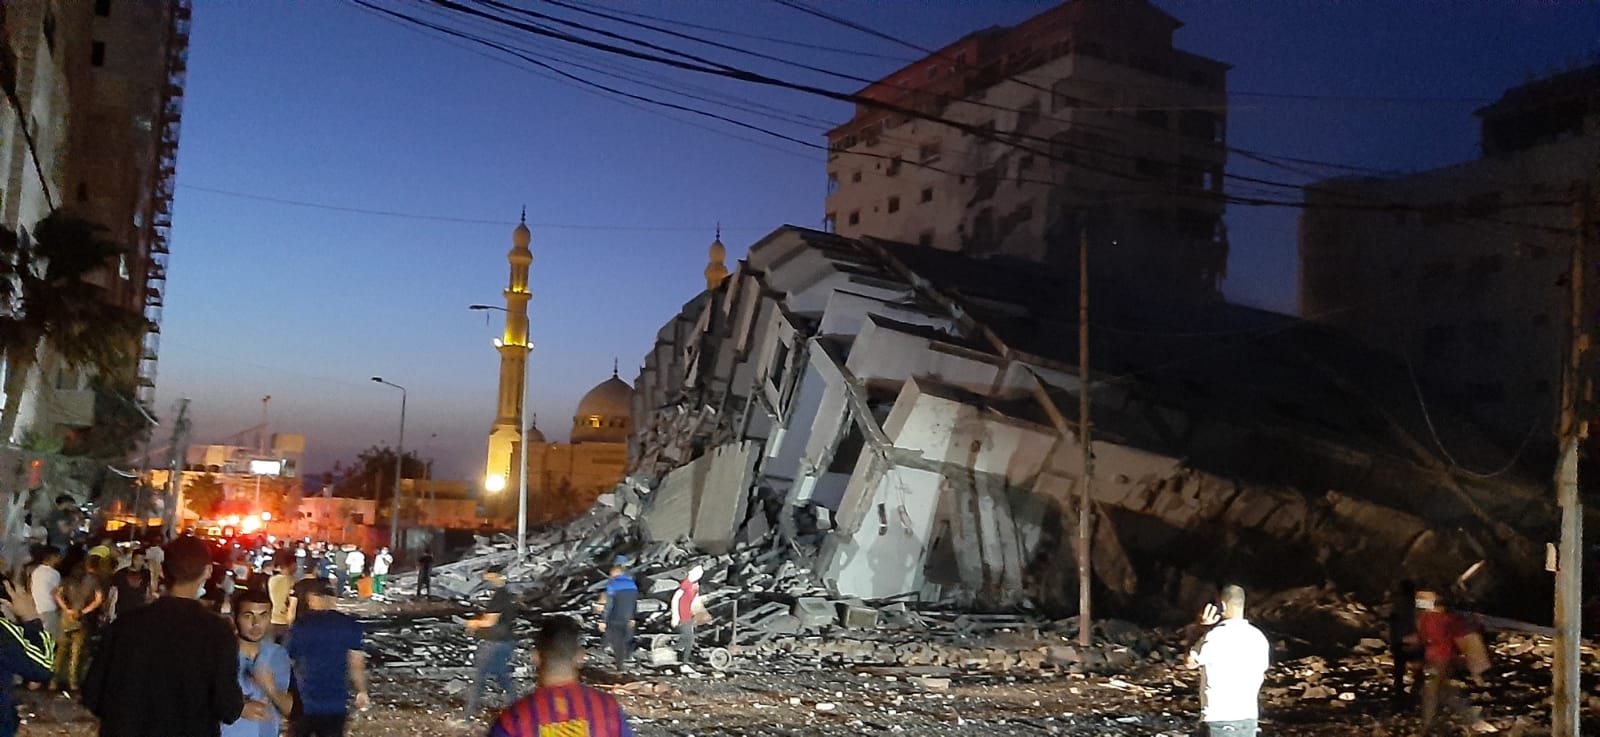 الإعلام الحكومي بغزة: استهداف الأبراج السكنية جريمة حرب مُركبة